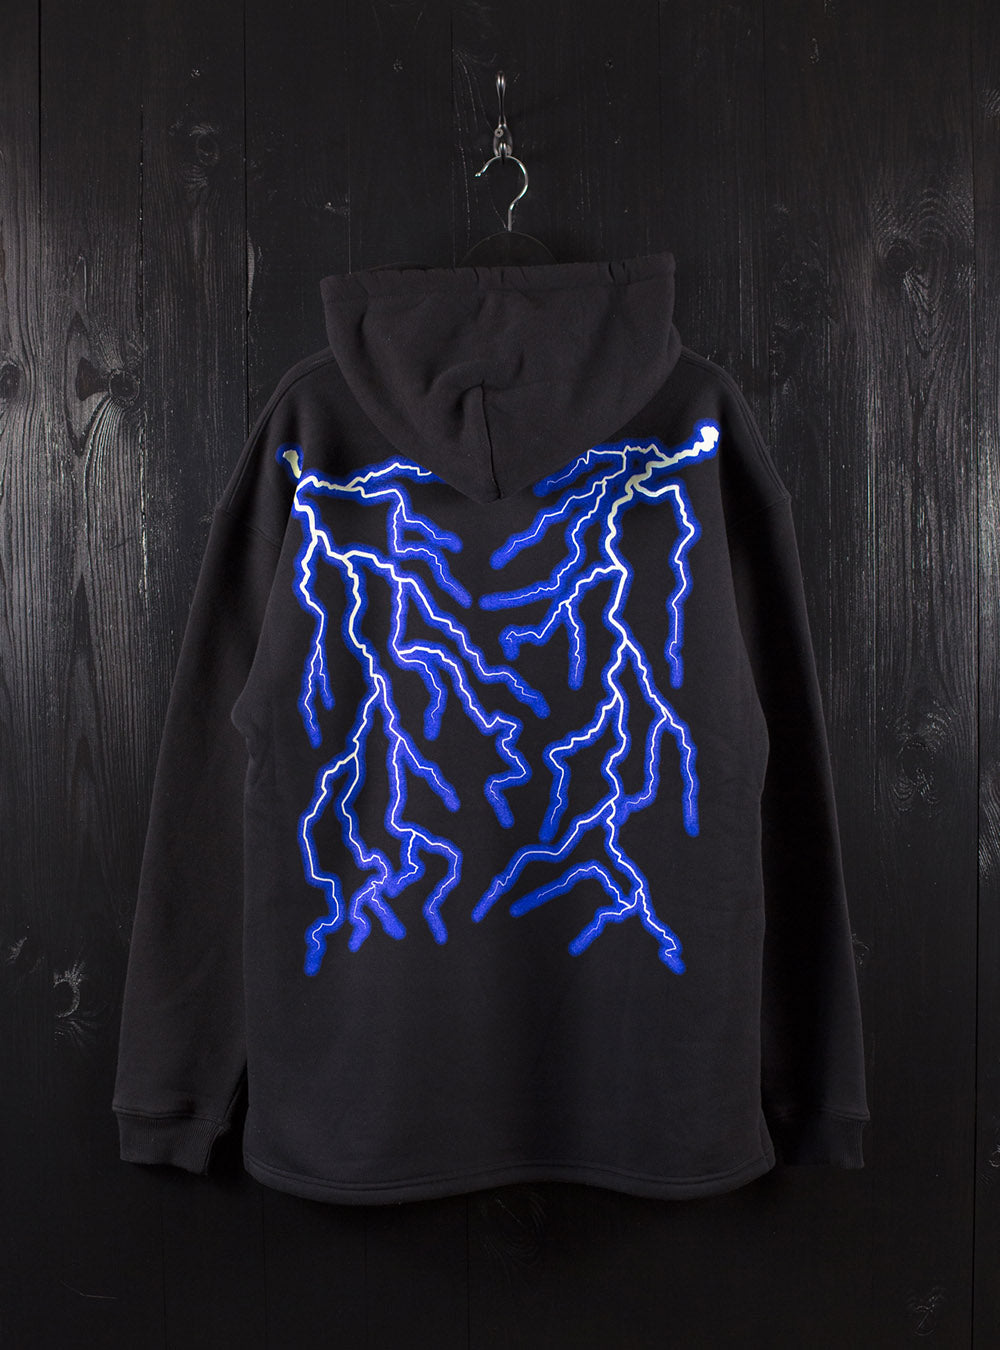 Thunder Metal logo hoodie